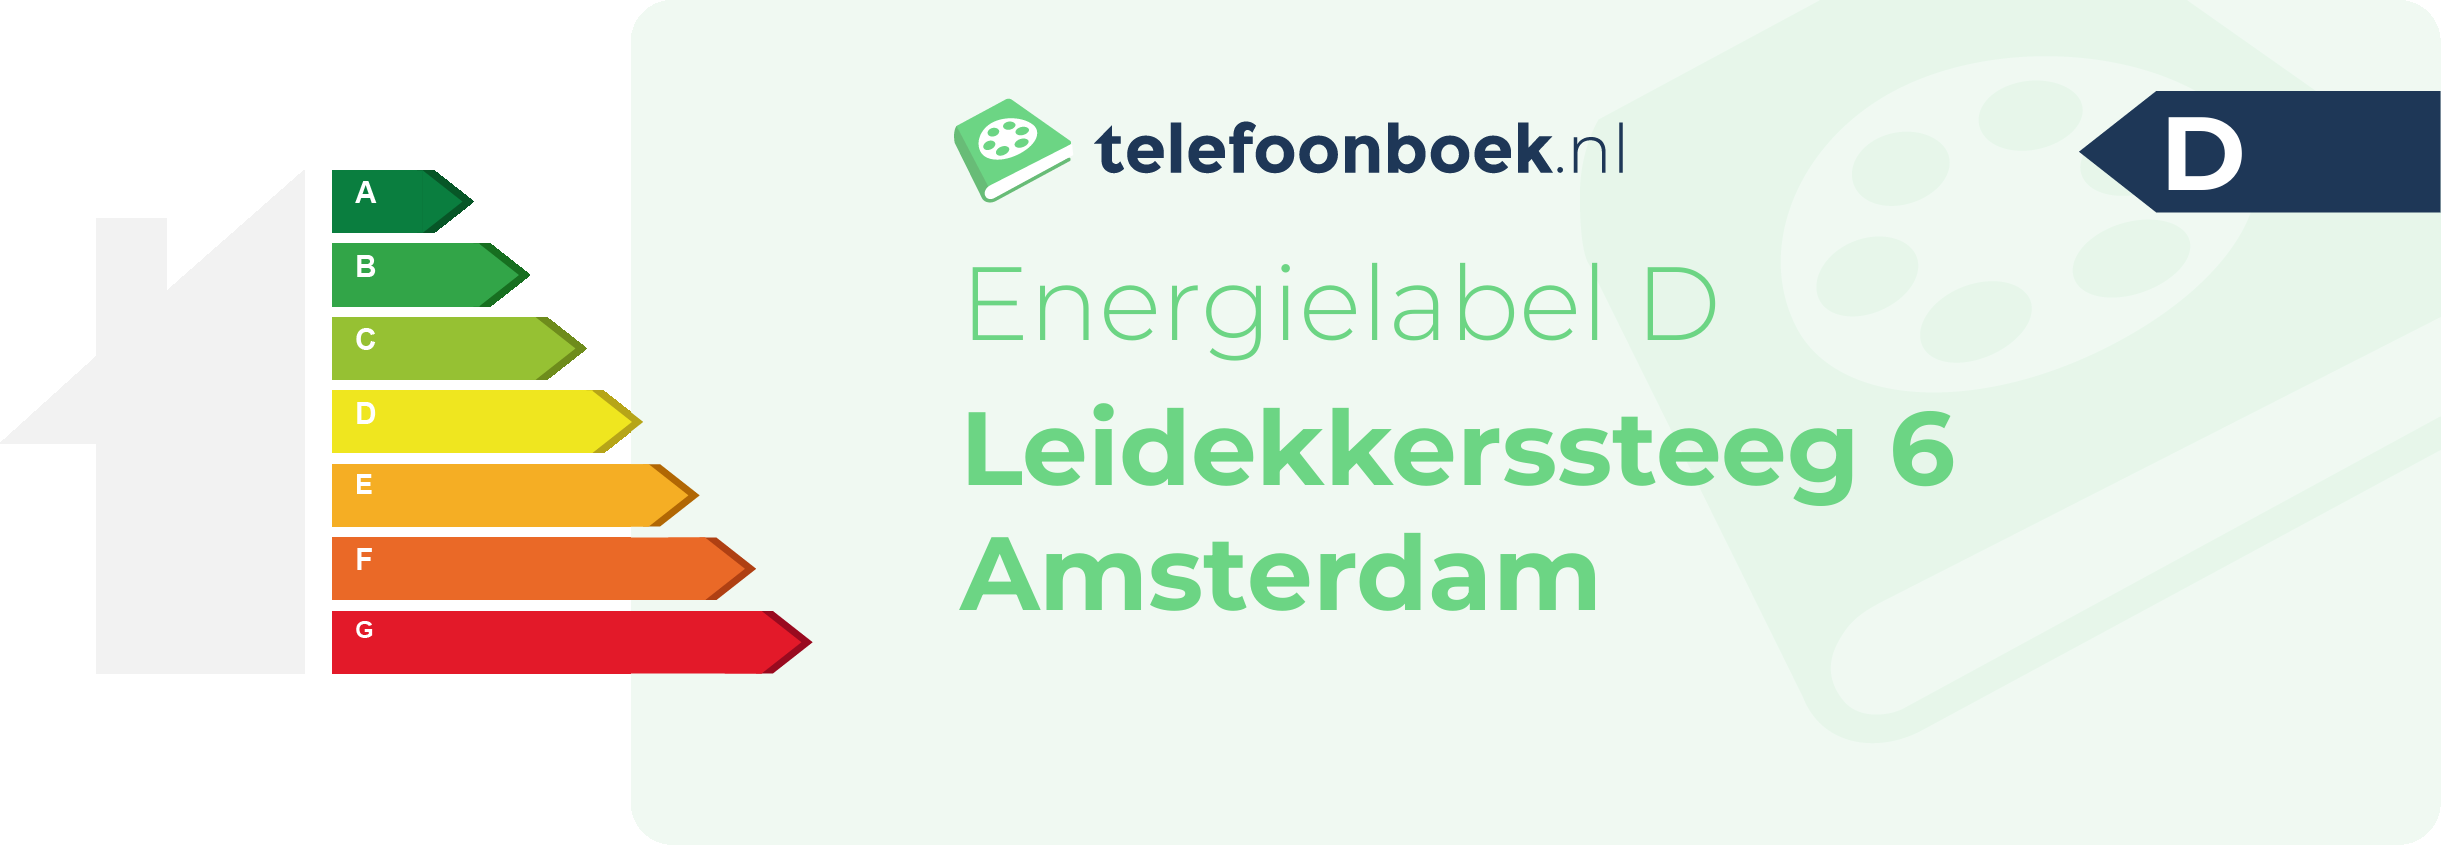 Energielabel Leidekkerssteeg 6 Amsterdam